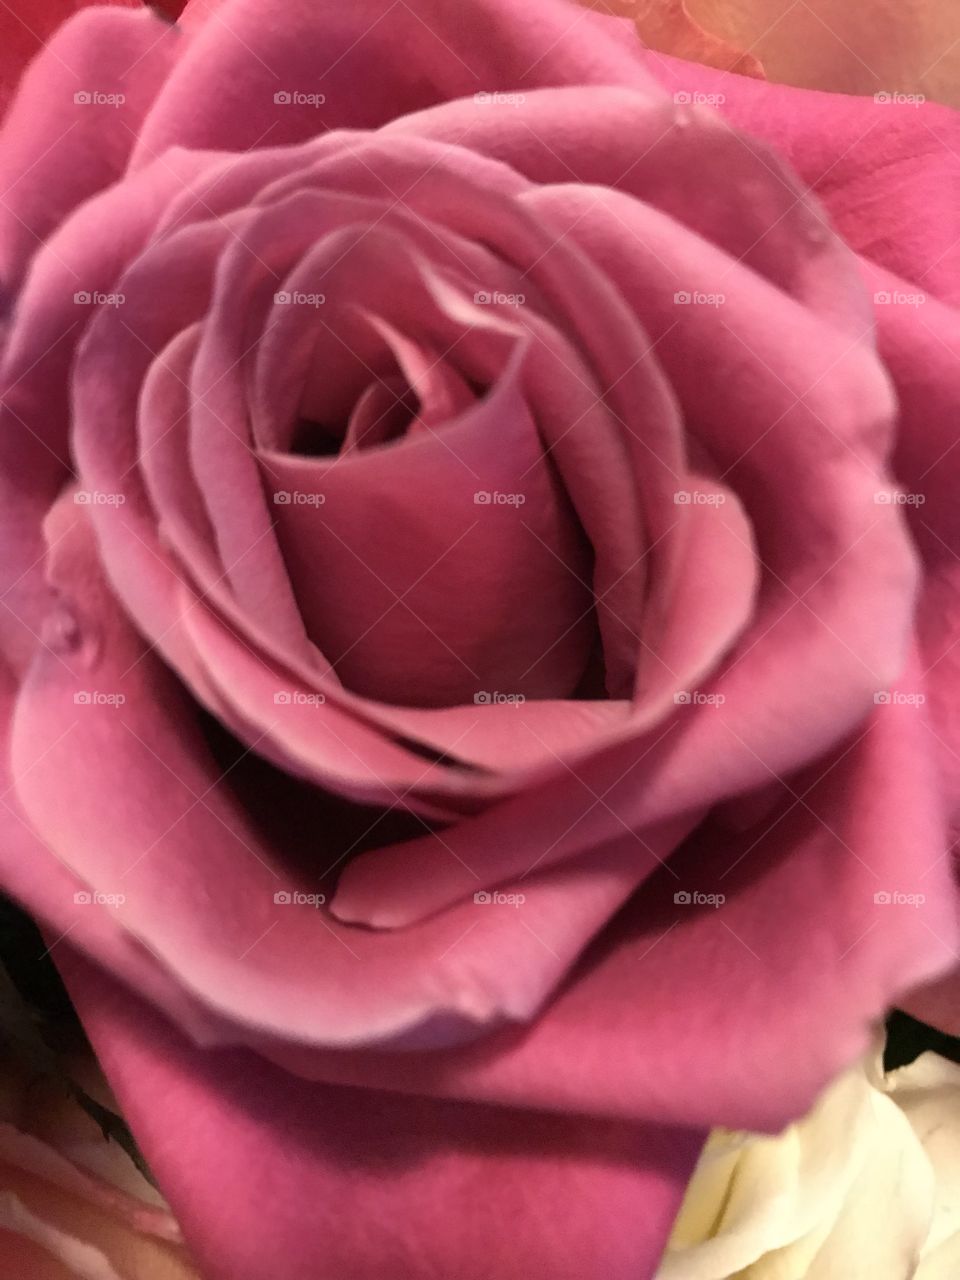 Beautiful rose colored rose.